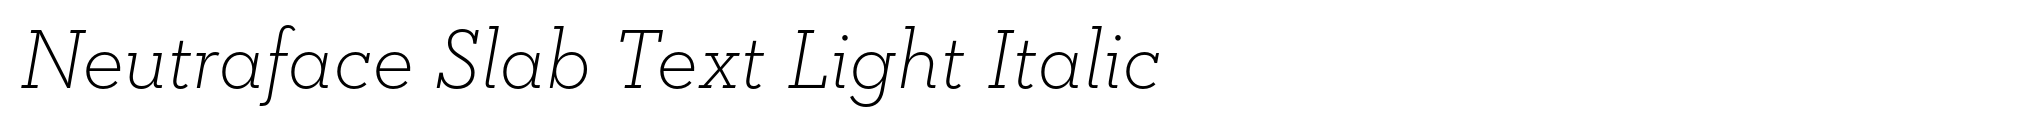 Neutraface Slab Text Light Italic image